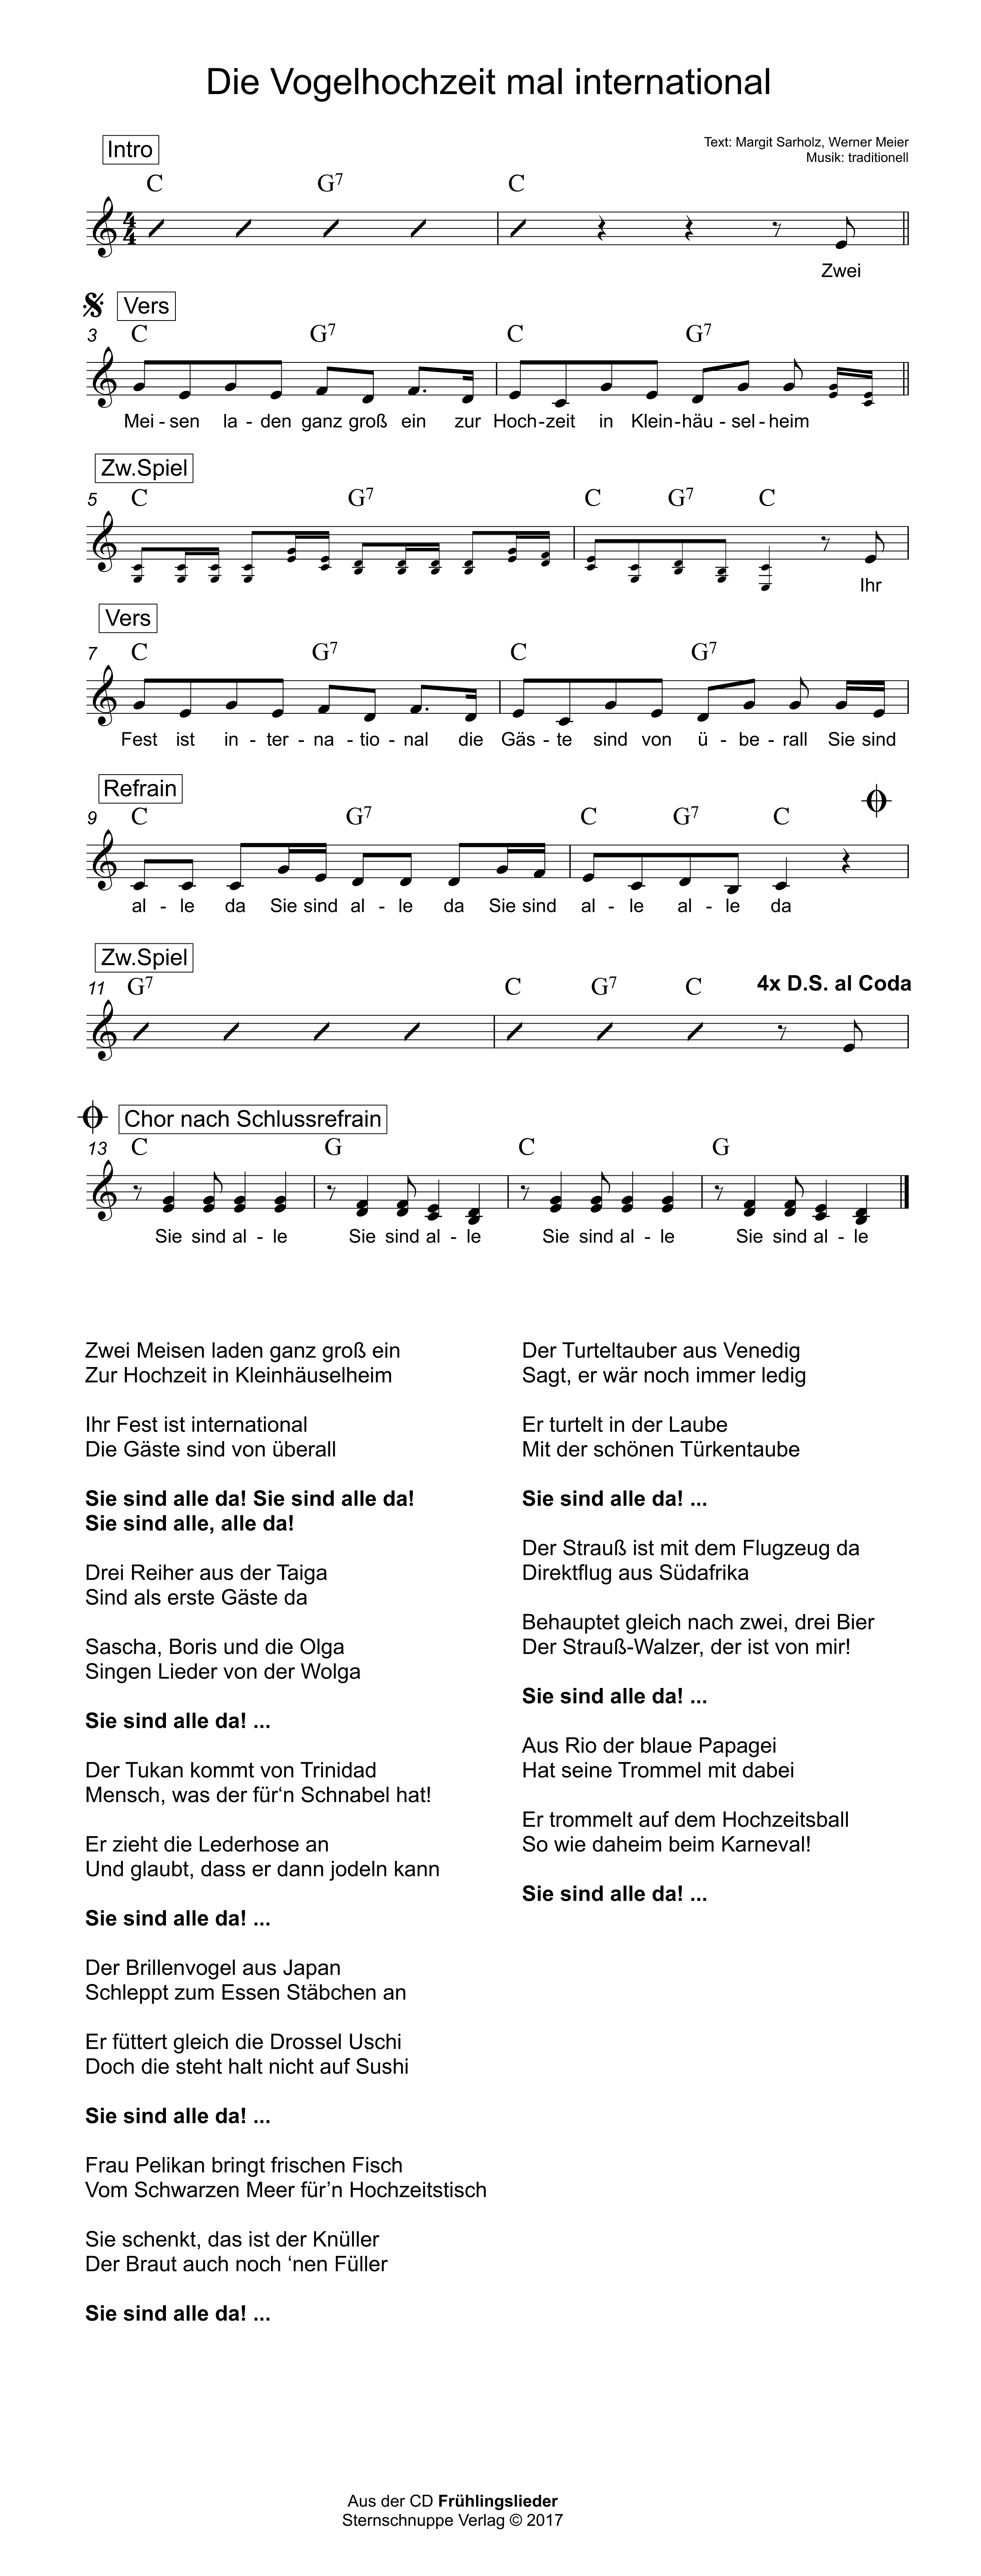 Liedtext, Akkorde und Noten vom Kinderlied Die Vogelhochzeit mal international